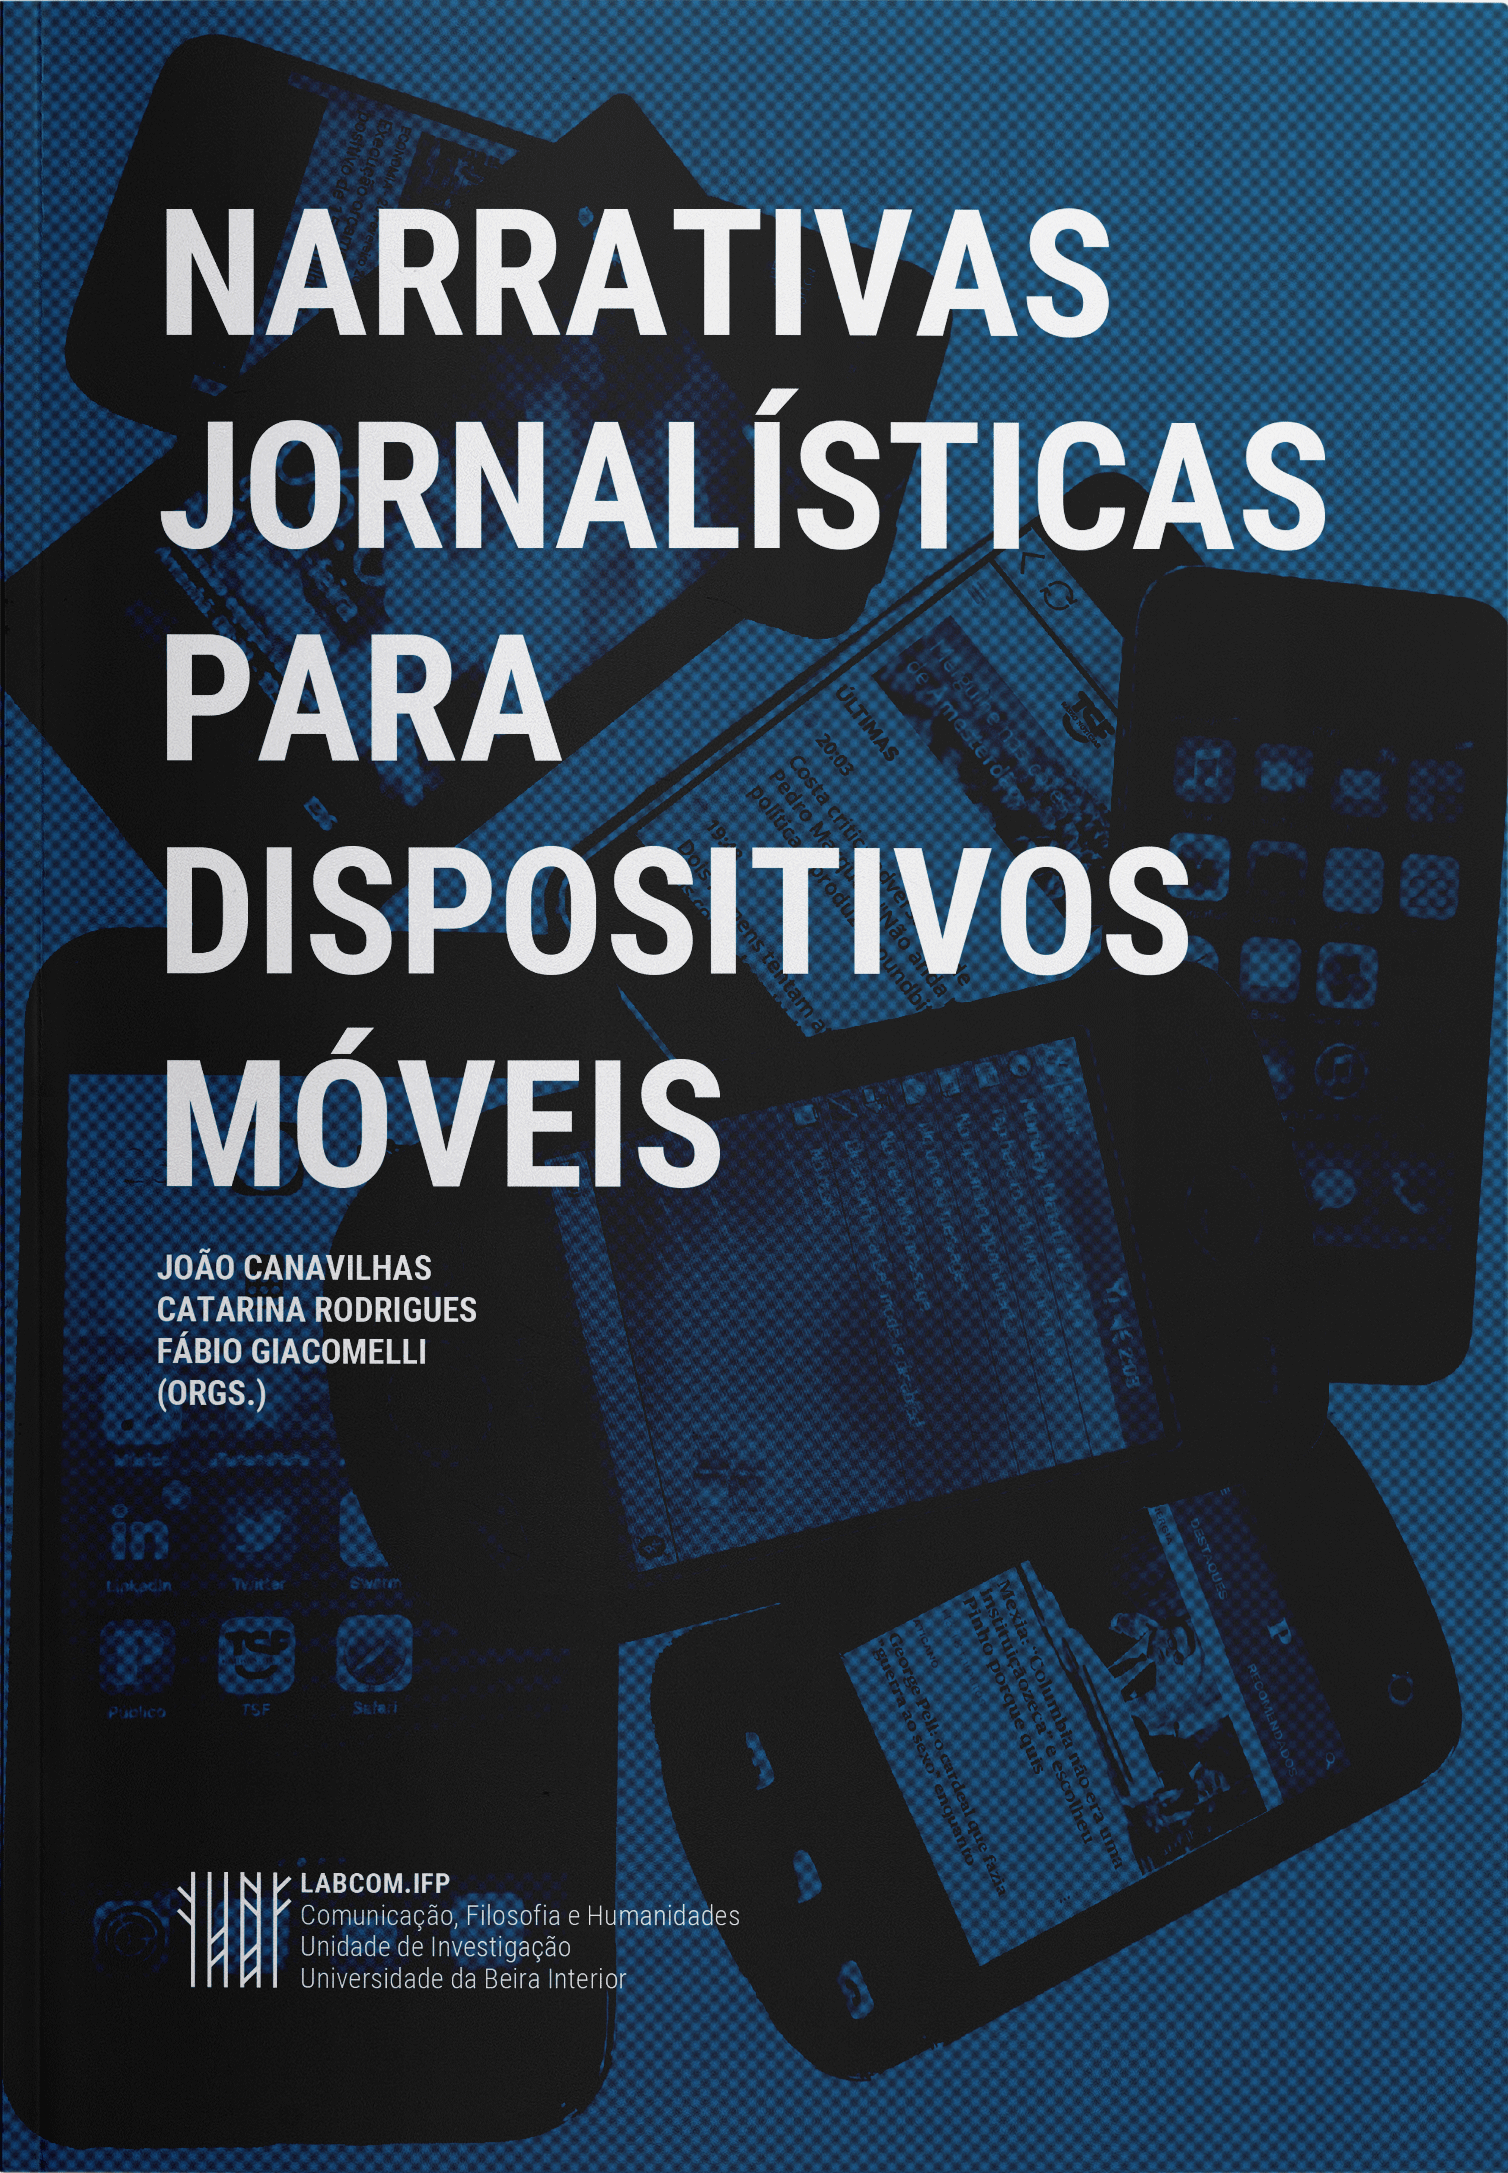 Capa: João Canavilhas, Catarina Rodrigues e Fábio Giacomelli (Orgs.) (2019) Narrativas jornalísticas para dispositivos móveis. Communication  +  Philosophy  +  Humanities. .